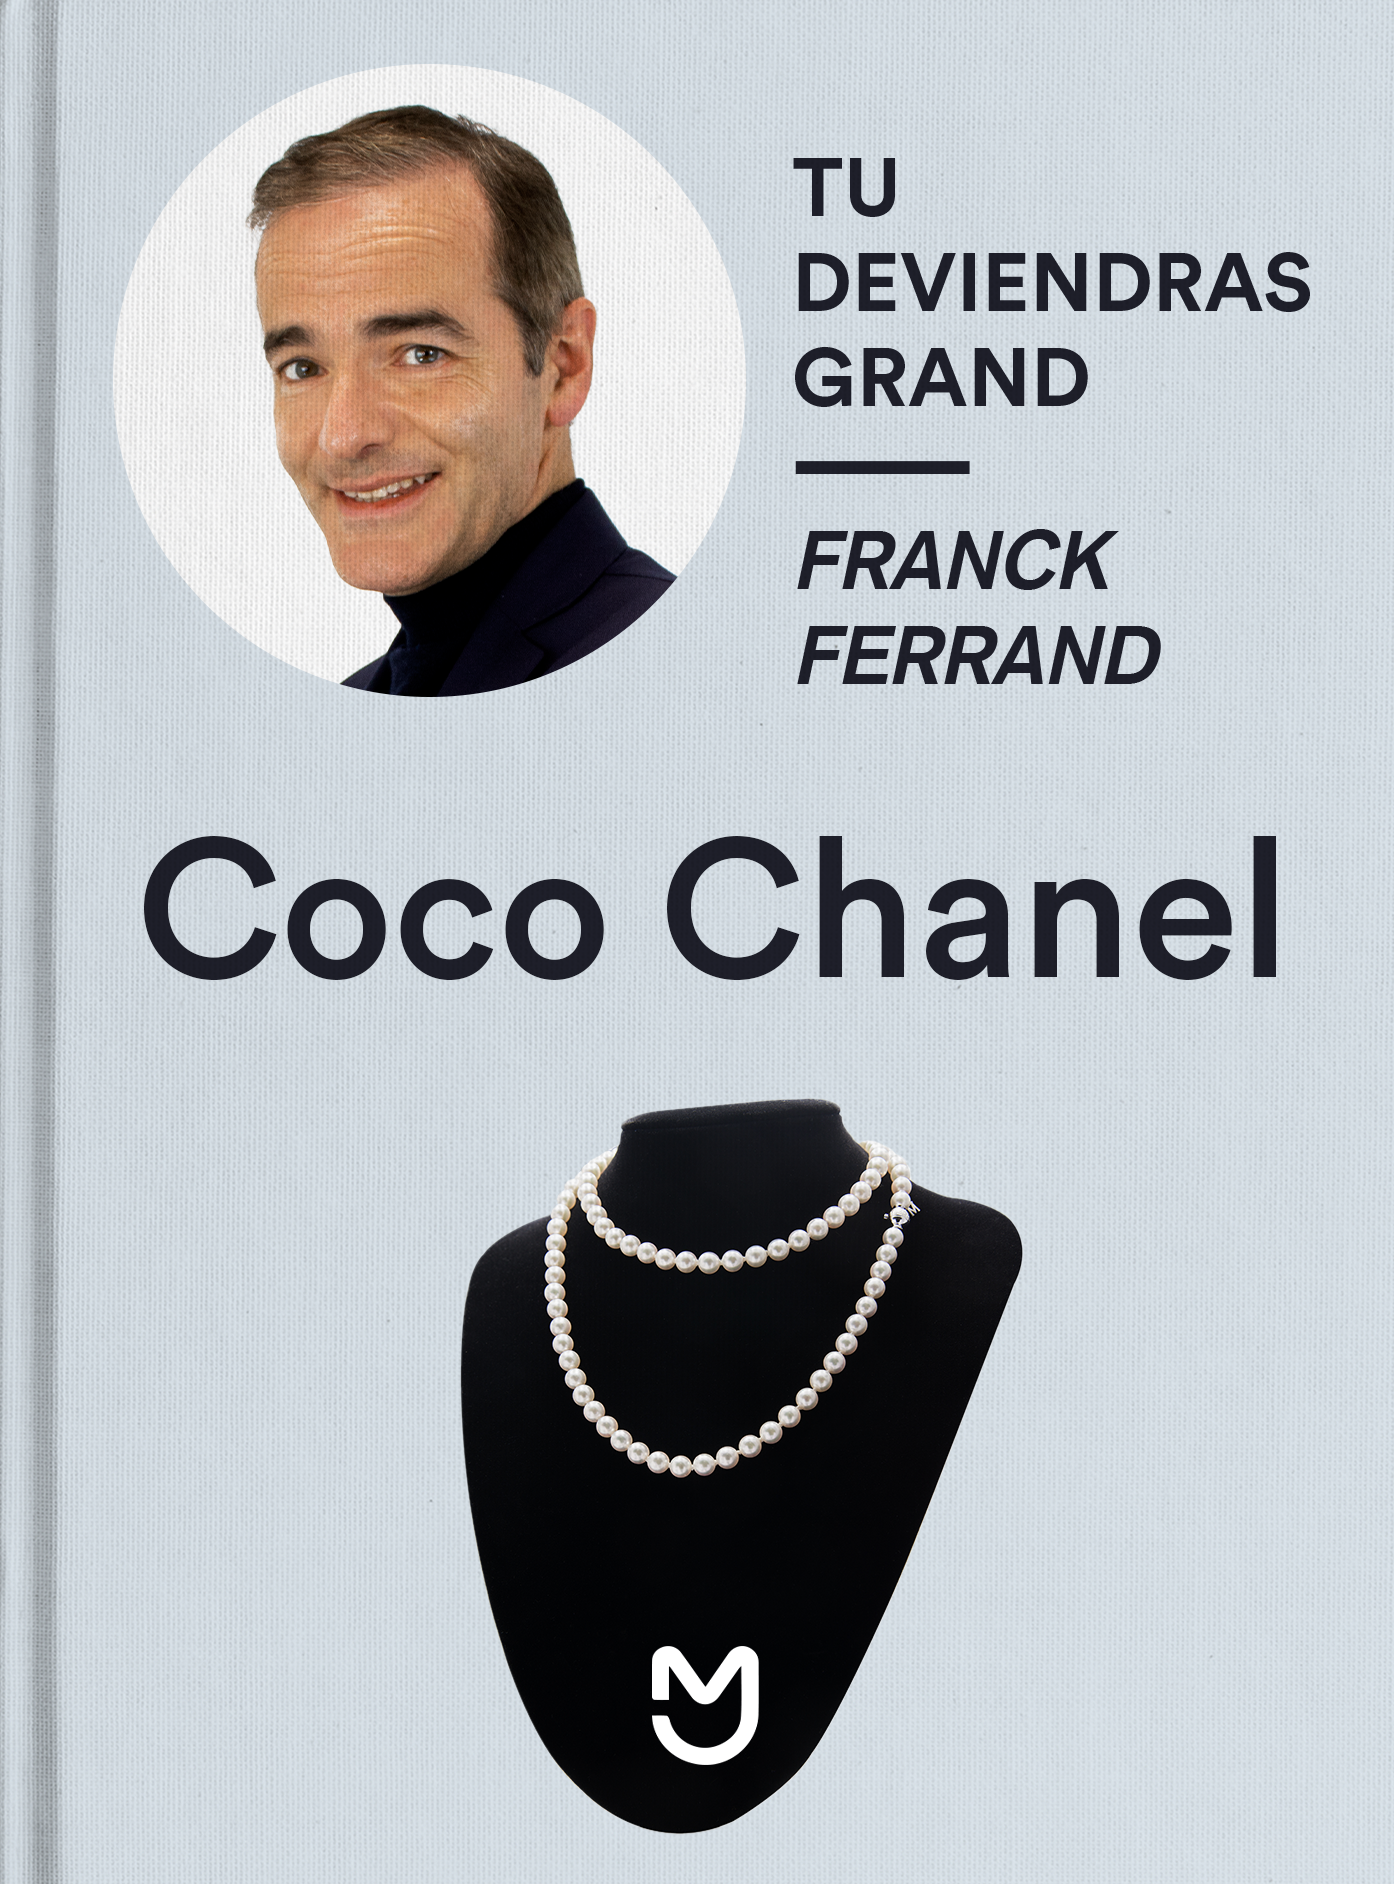 Franck Ferrand, Coco Chanel